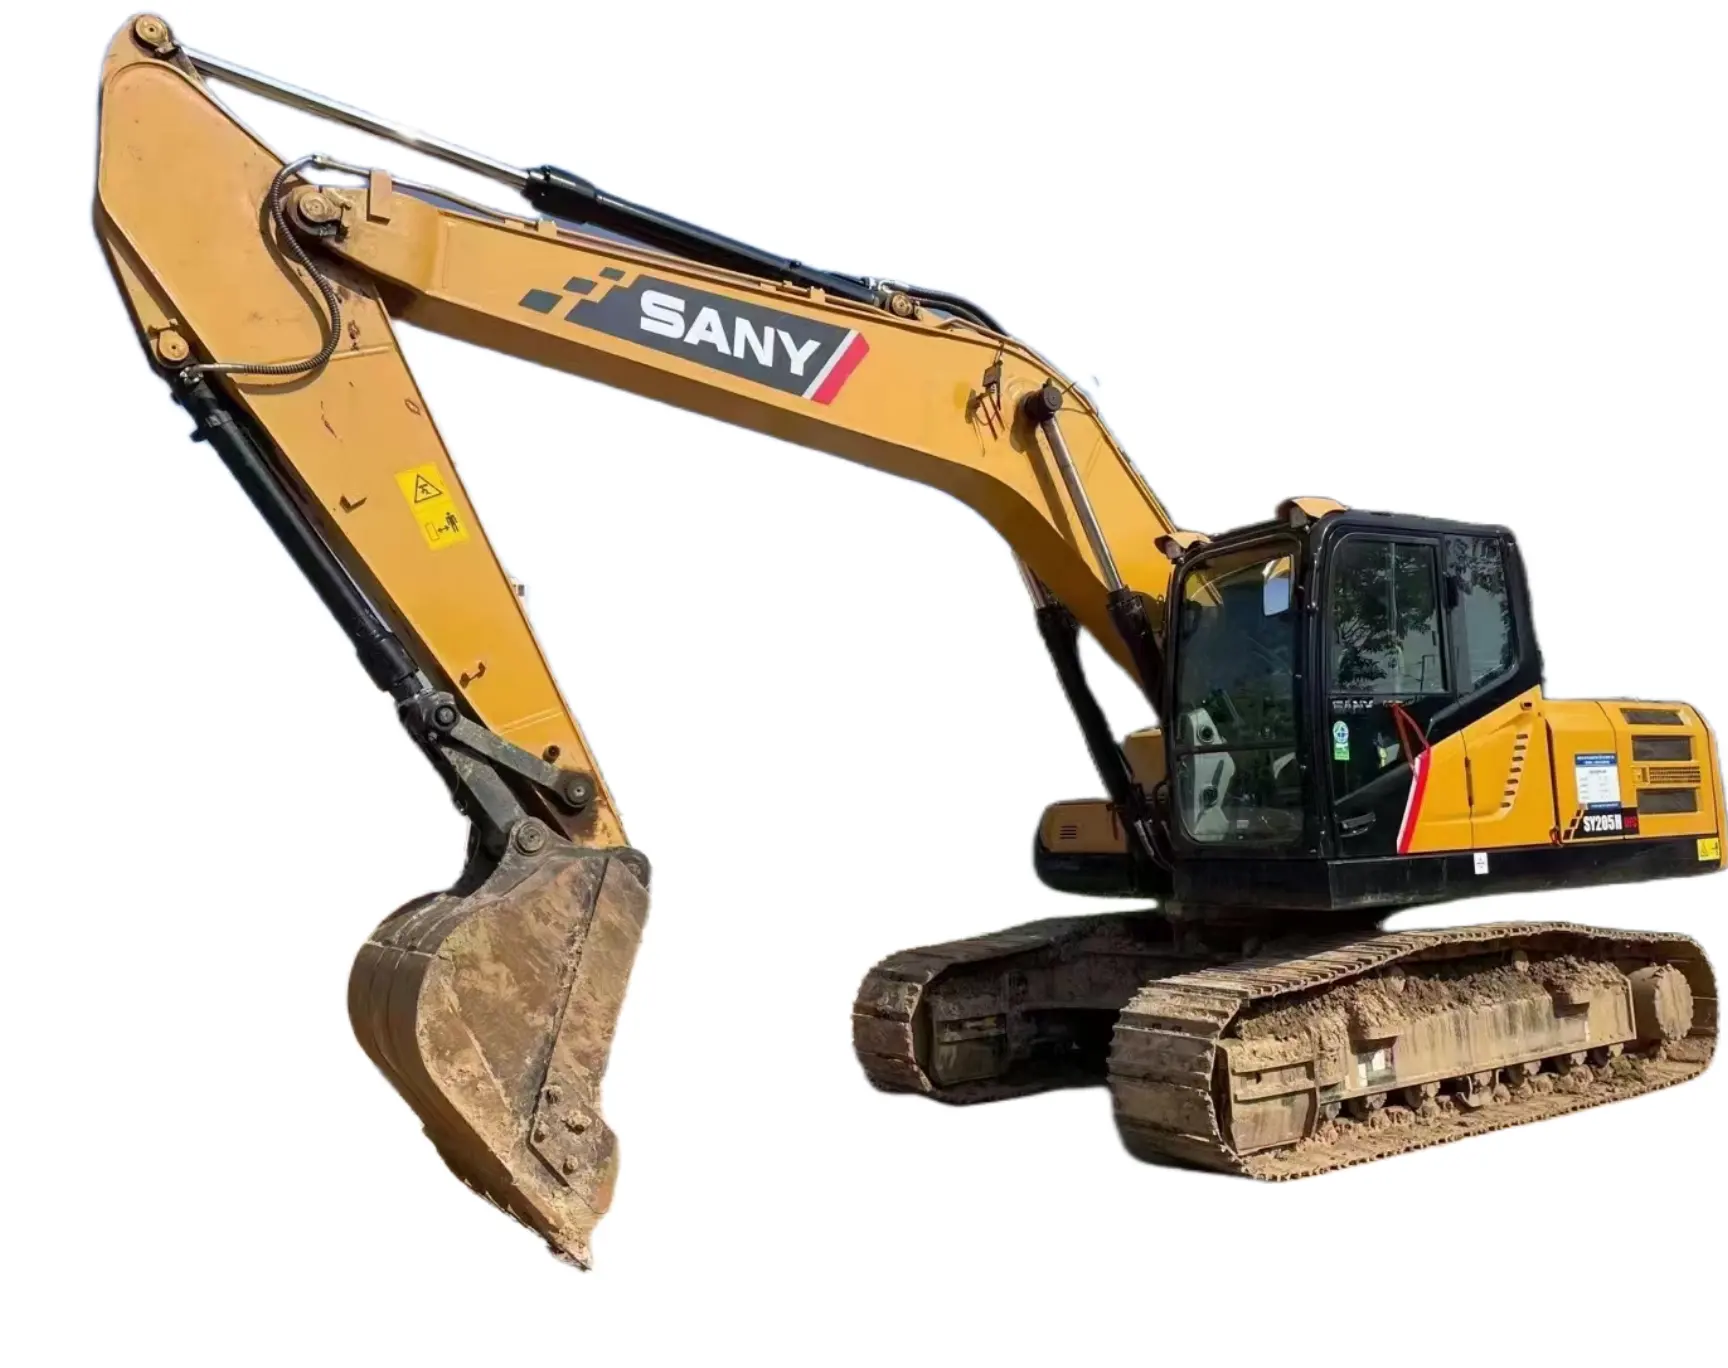 Escavatore usato efficiente ed affidabile sany SY205 10 tonnellate grande escavatore cingolato usato